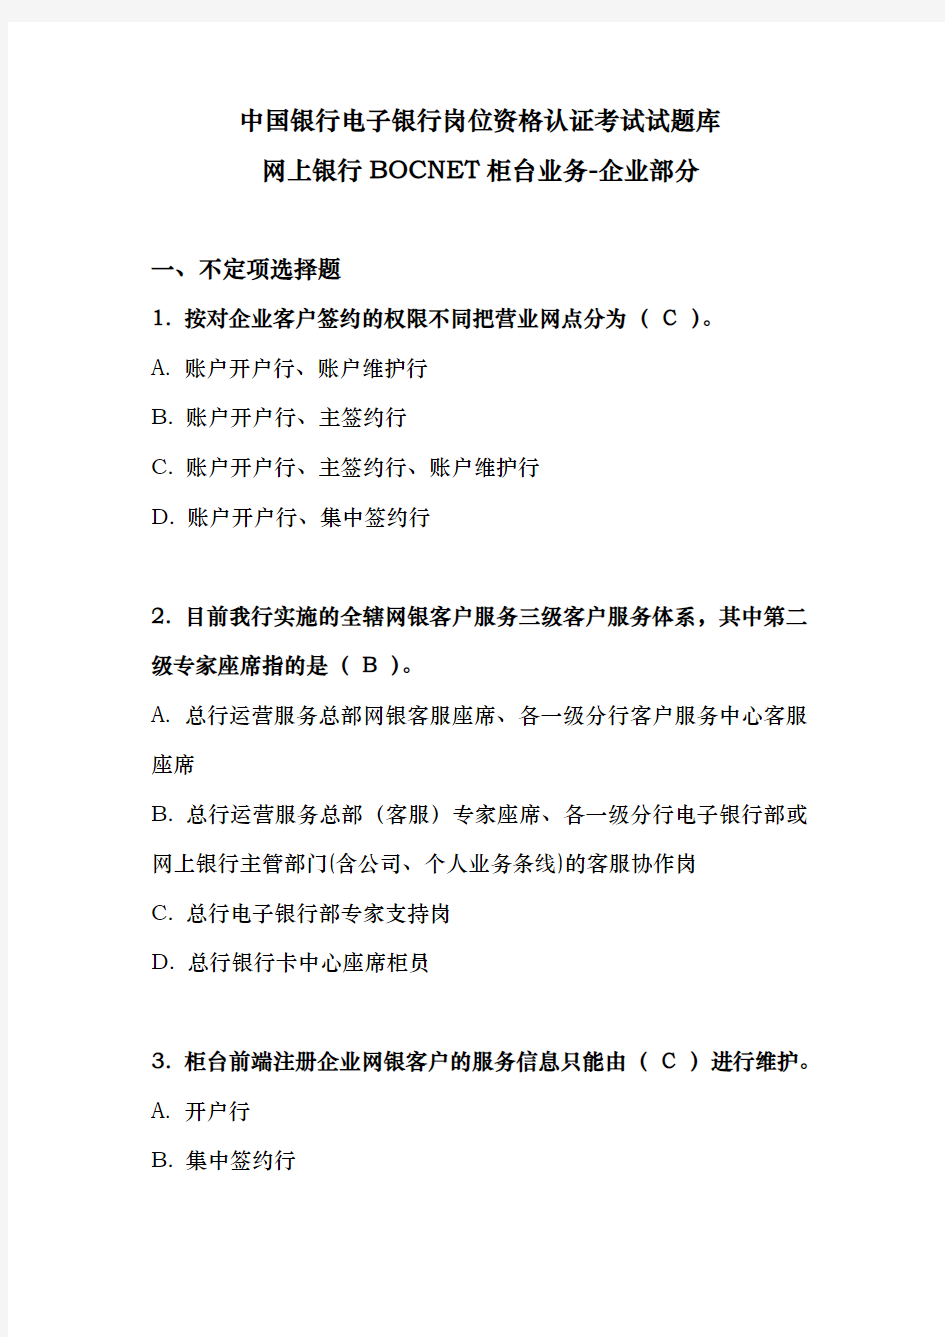 中国银行电子银行岗位资格认证考试试题库完整